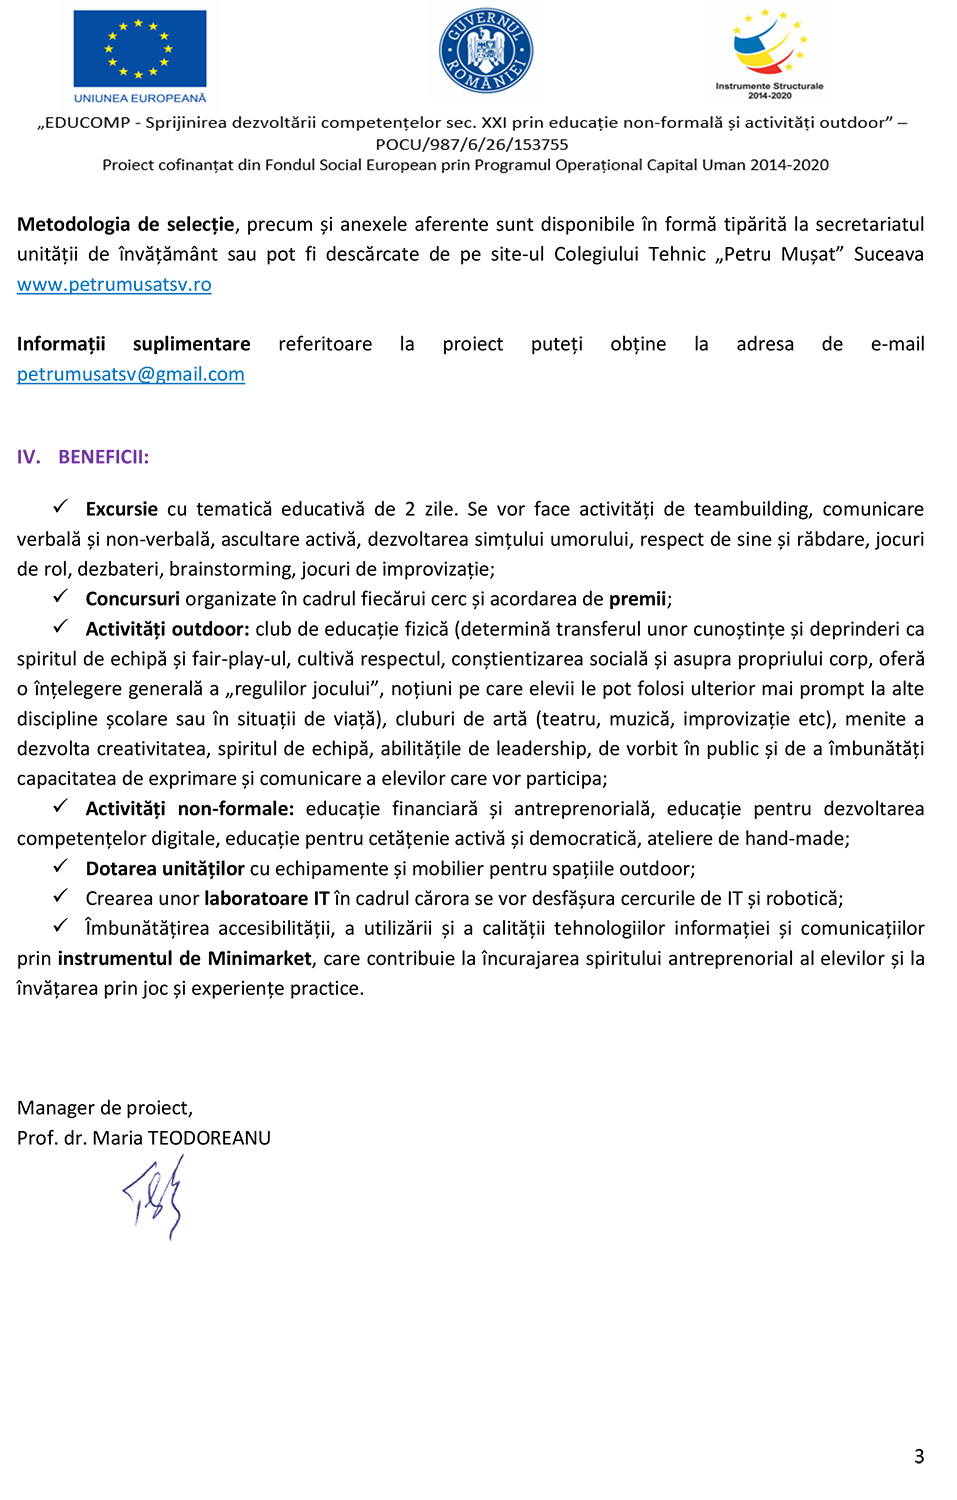 EDUCOMP - Sprijinirea dezvoltării competențelor sec. XXI prin educație non-formală și activități outdoor (anunț de selecție a grupului țintă - elevi)